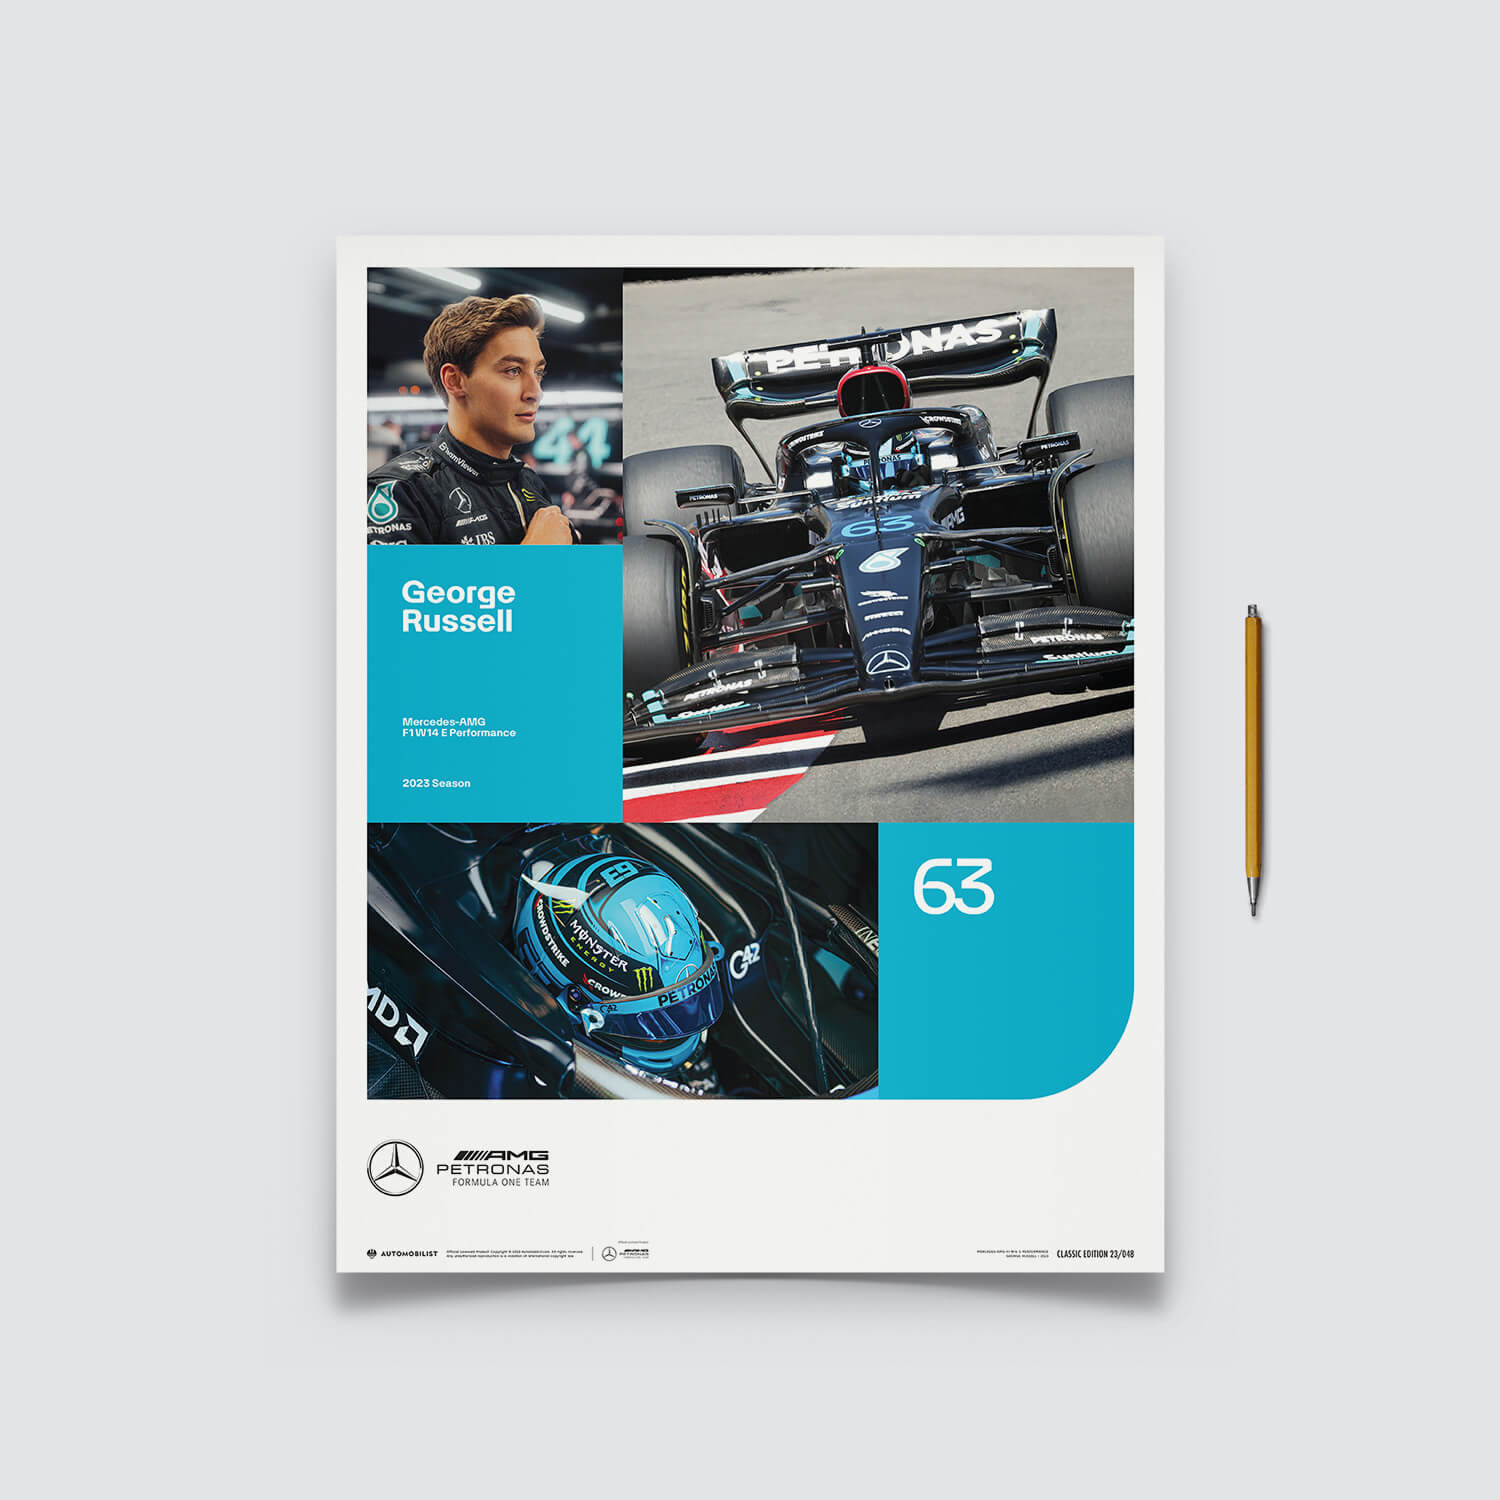 Mercedes-AMG Petronas F1 Team - George Russell - 2023